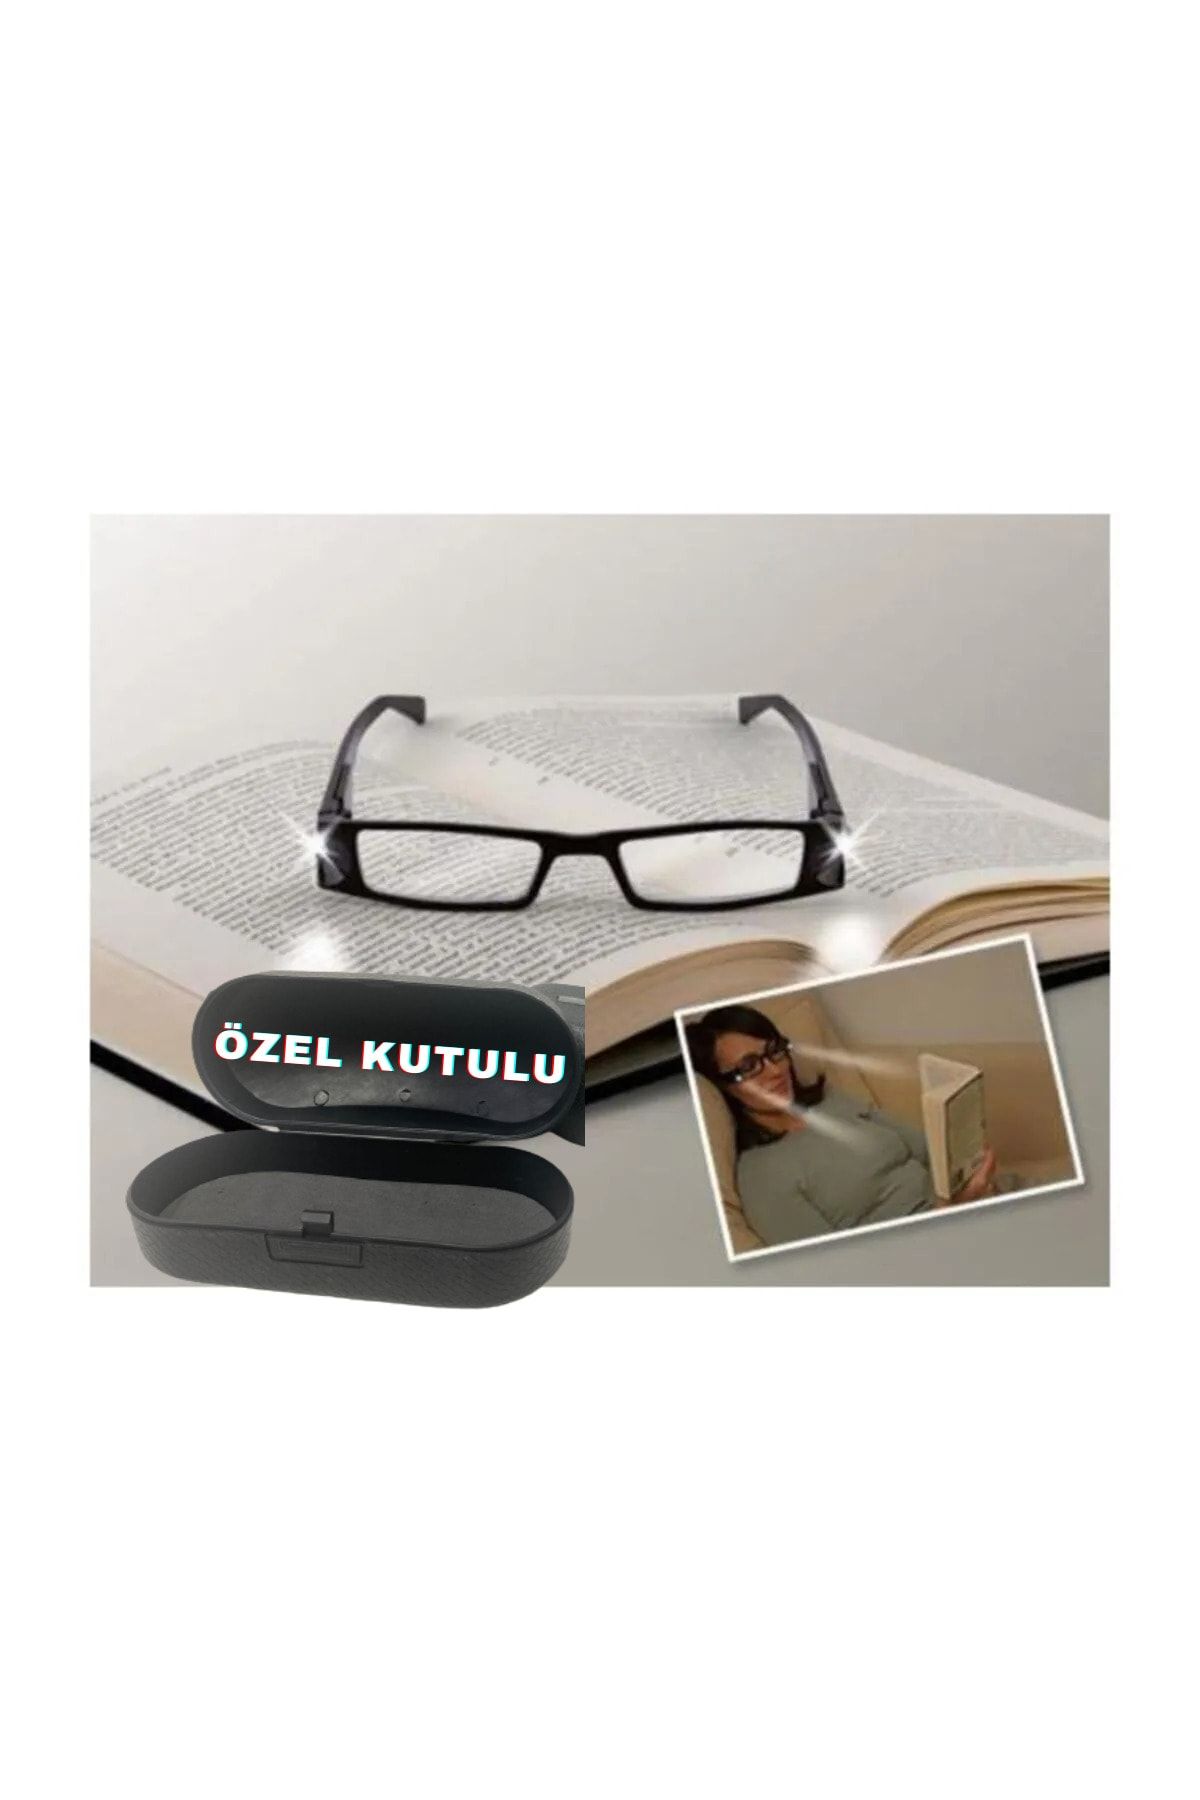 Cmt Yayınları Led Işıklı Camsız Kitap Okuma Gözlüğü